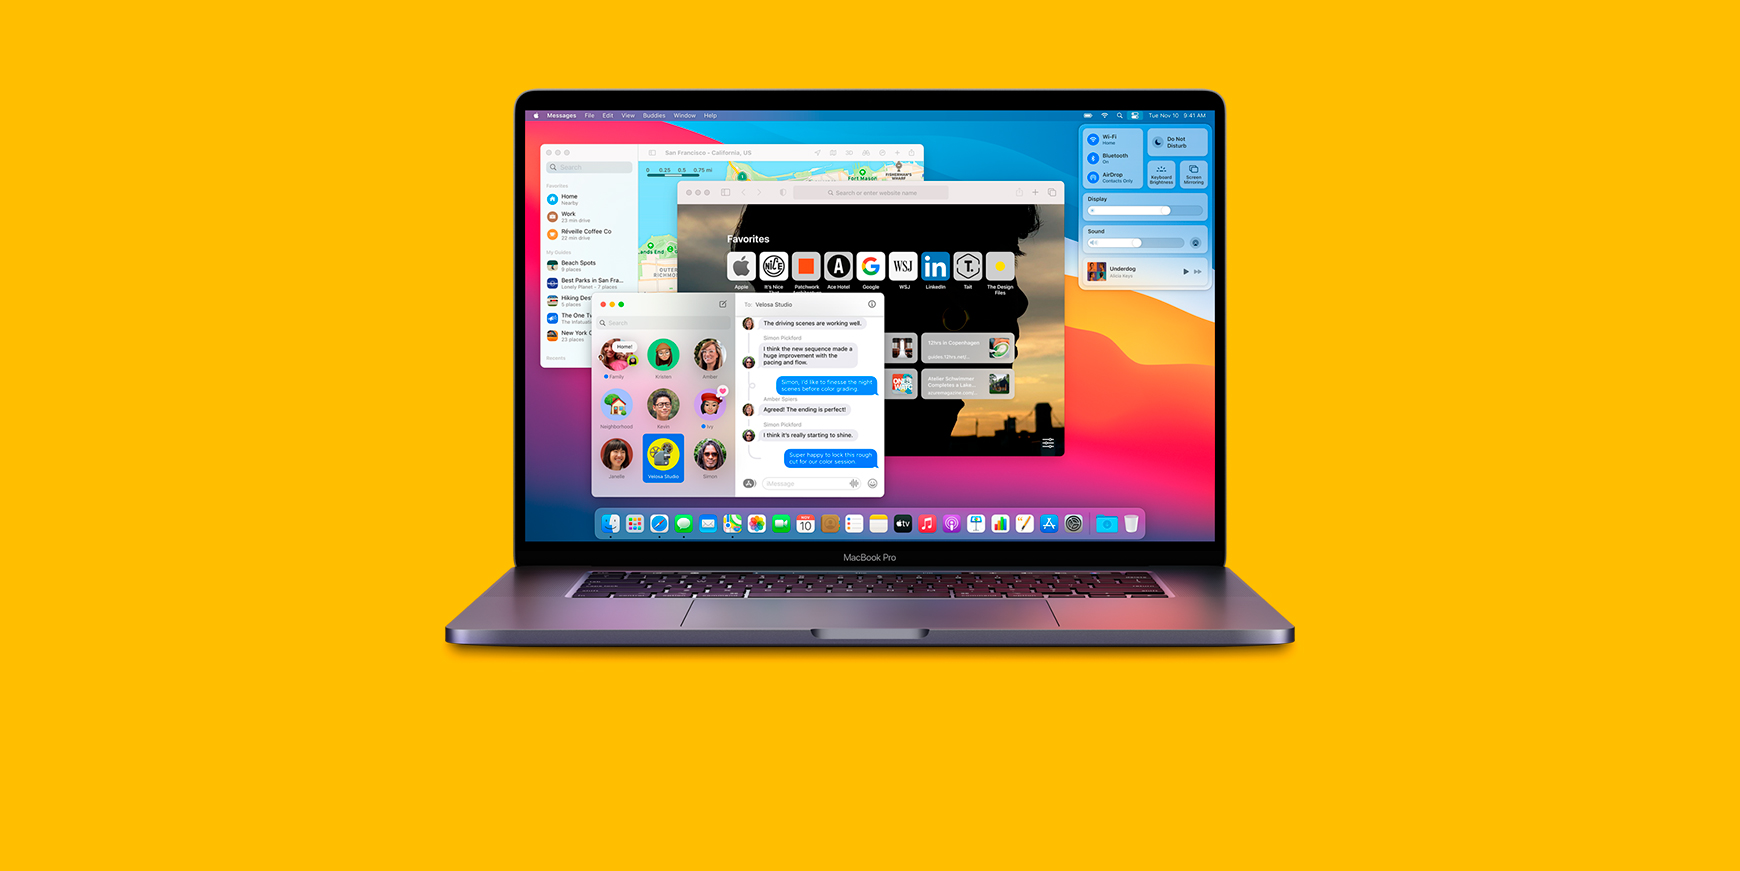 rygte indbildskhed Forskel 5 store nyheder i macOS 11 Big Sur